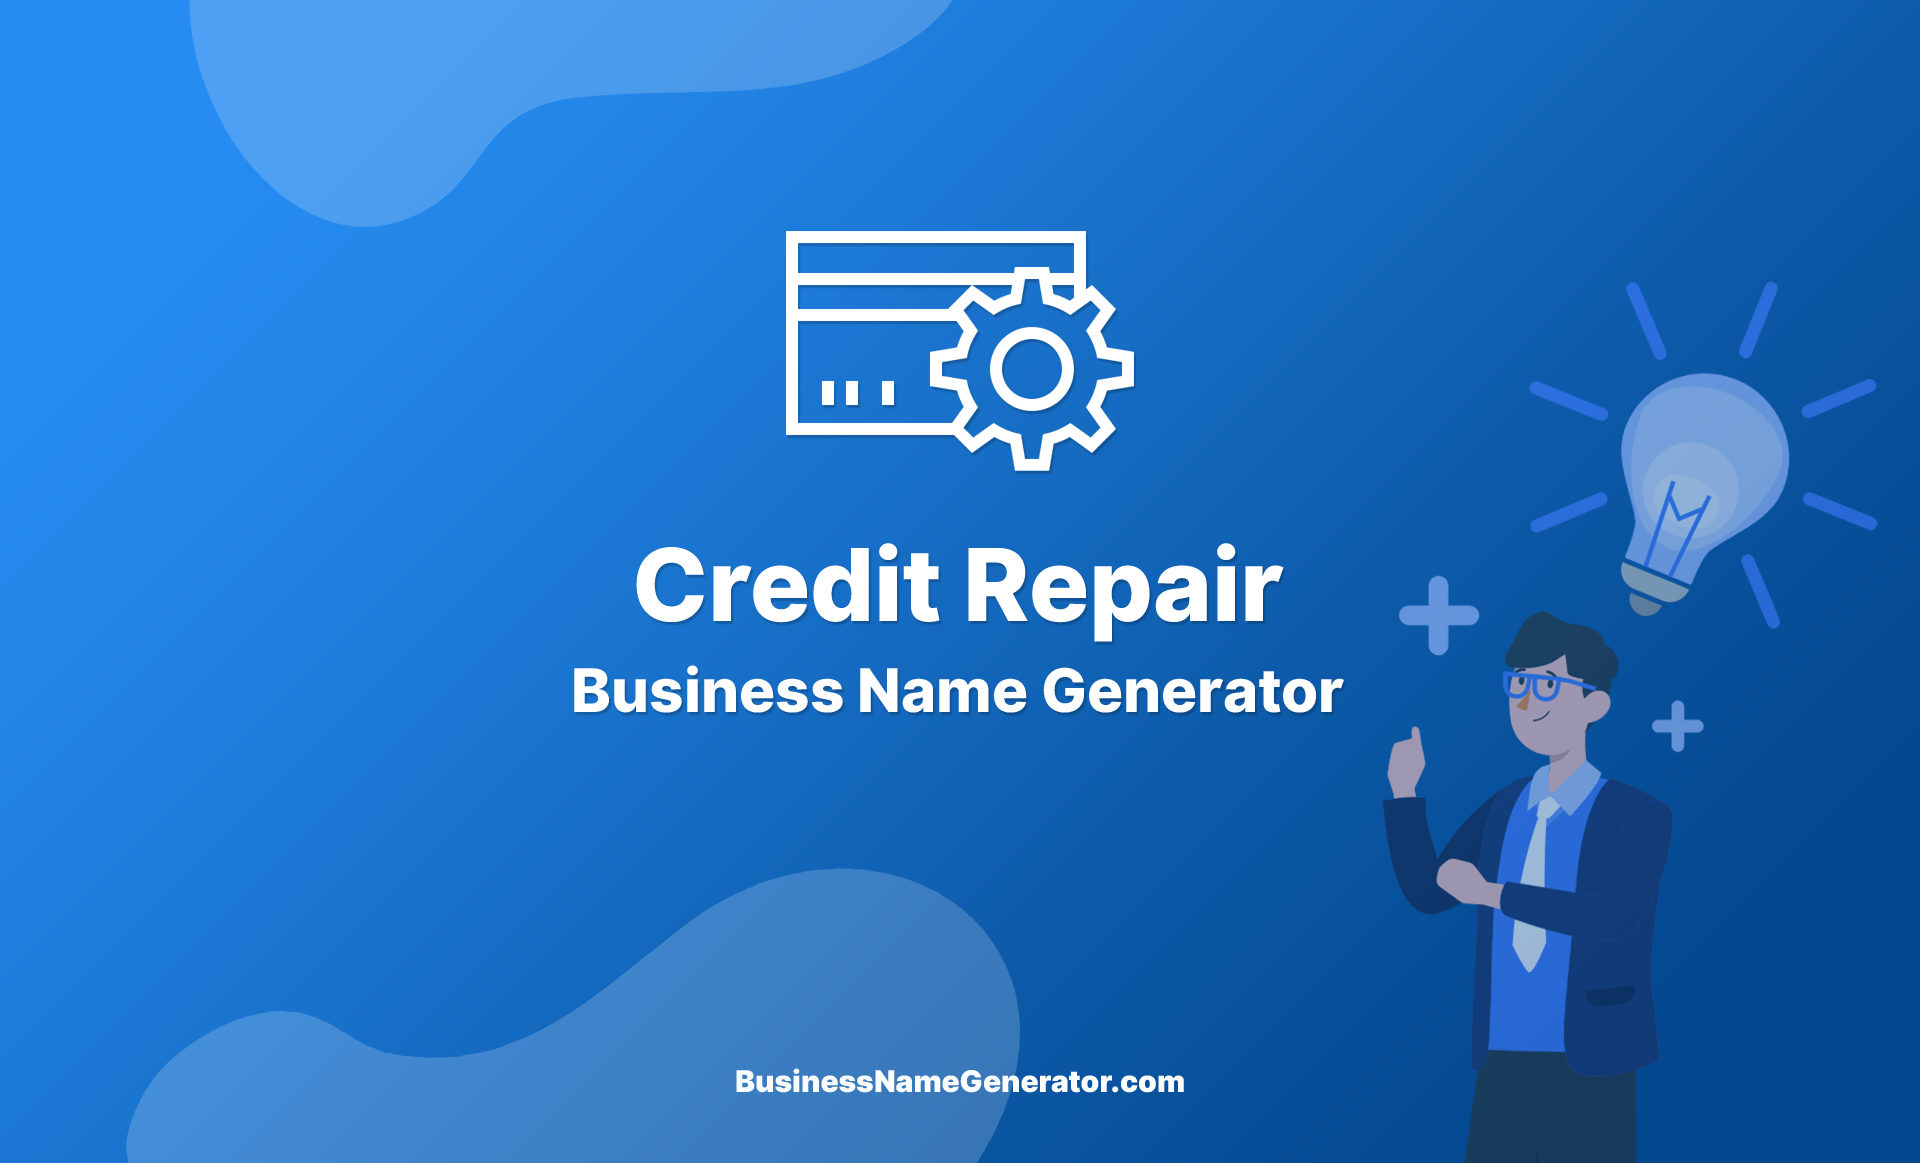 Credit Repair Business Name Generator